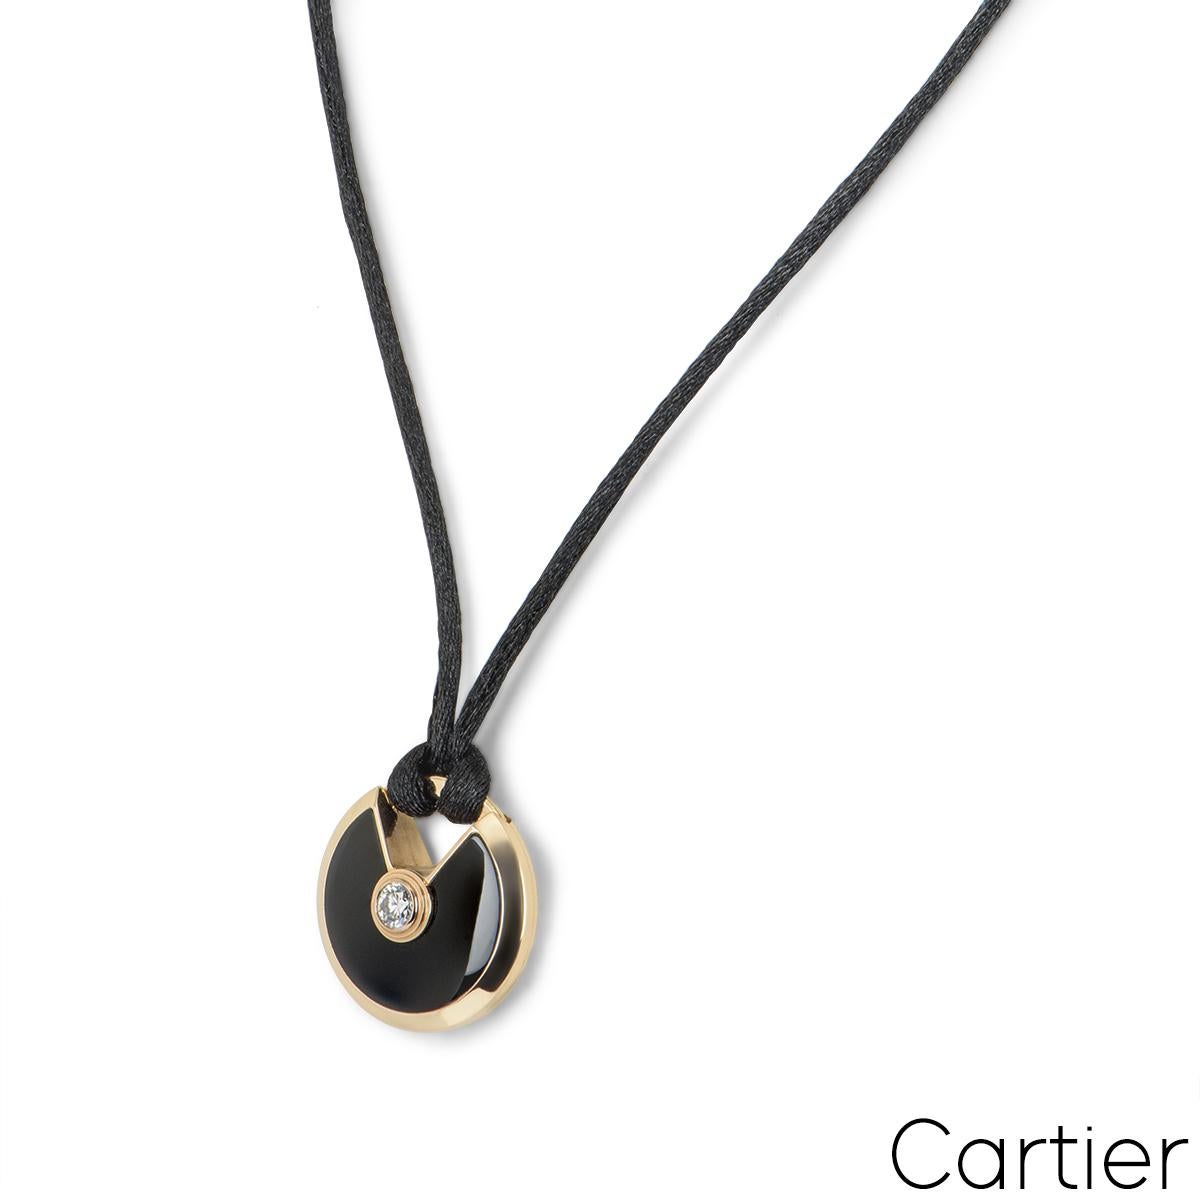 Pendentif Cartier en or rose 18 carats de la collection Amulette de Cartier. Le pendentif se compose d'un talisman circulaire, serti d'onyx et complété par un diamant rond de 0,09ct de taille brillant, en serti clos. Le talisman est suspendu à une